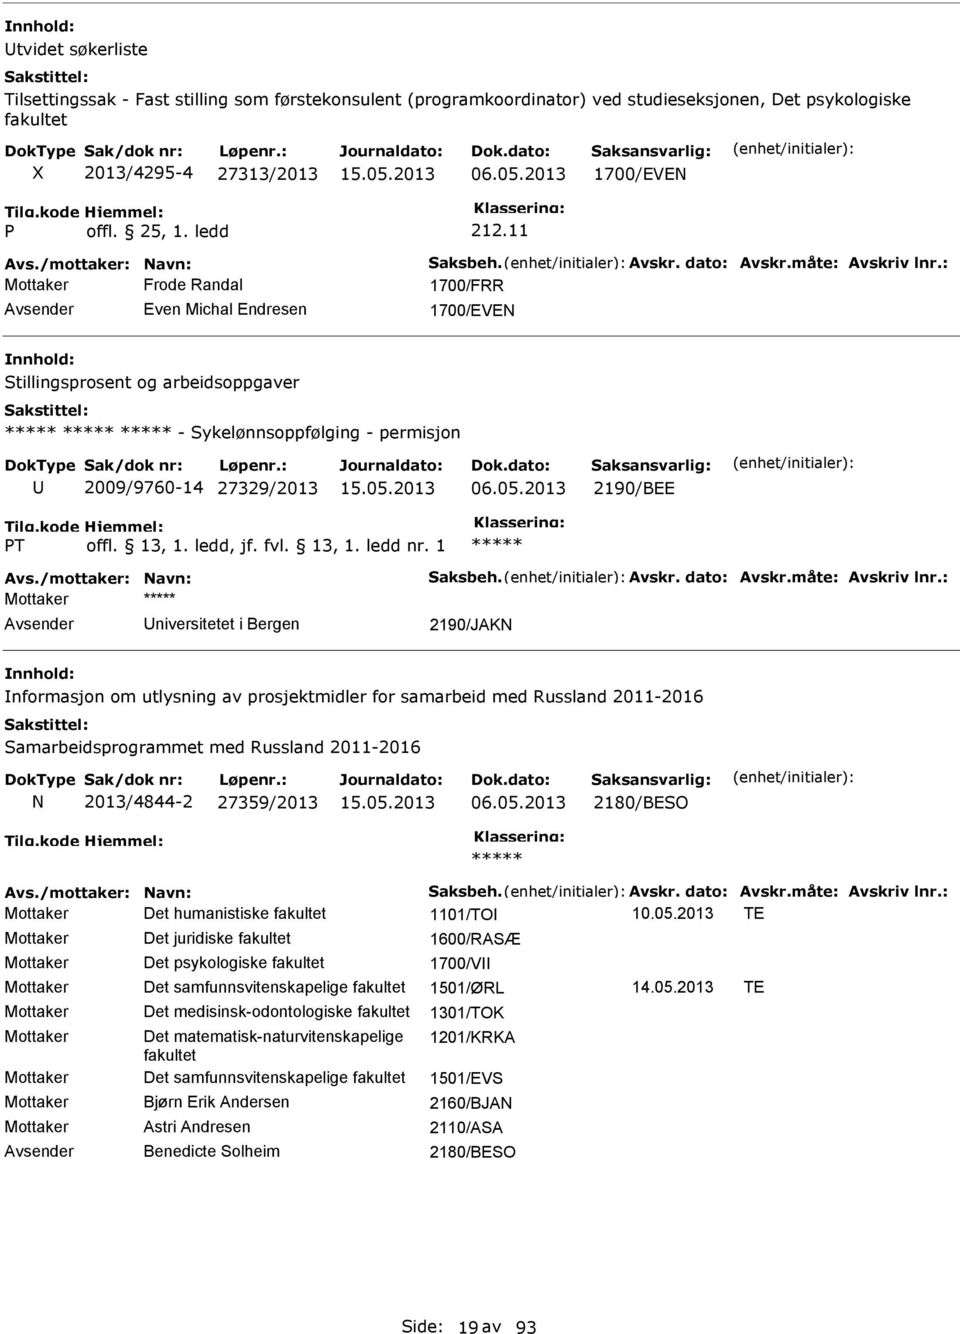 2013 2190/BEE T Mottaker niversitetet i Bergen 2190/JAK nformasjon om utlysning av prosjektmidler for samarbeid med Russland 2011-2016 Samarbeidsprogrammet med Russland 2011-2016 2013/4844-2